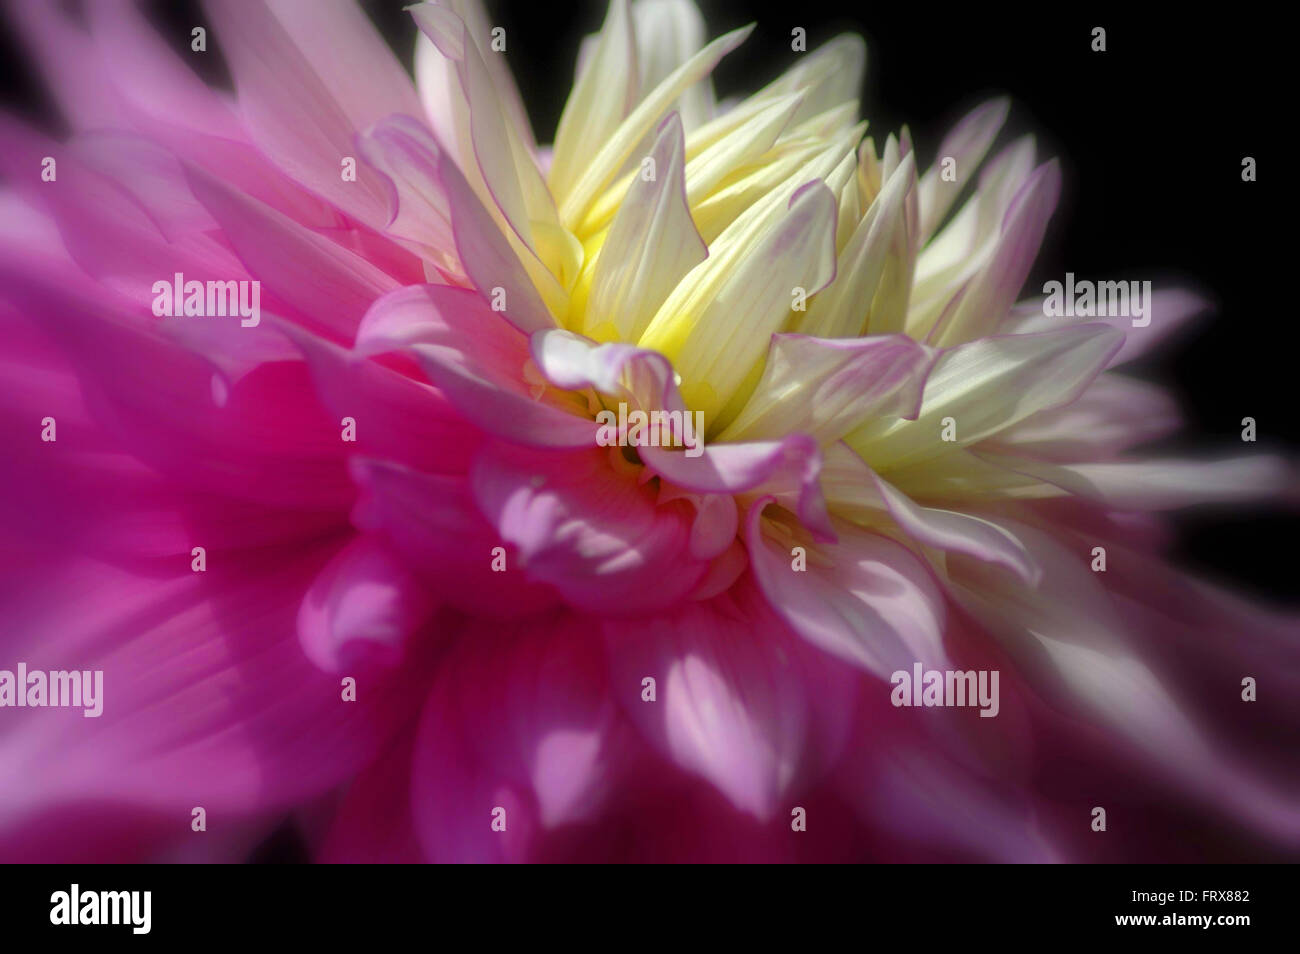 Pink and Yellow Chrysanthemum Stock Photo